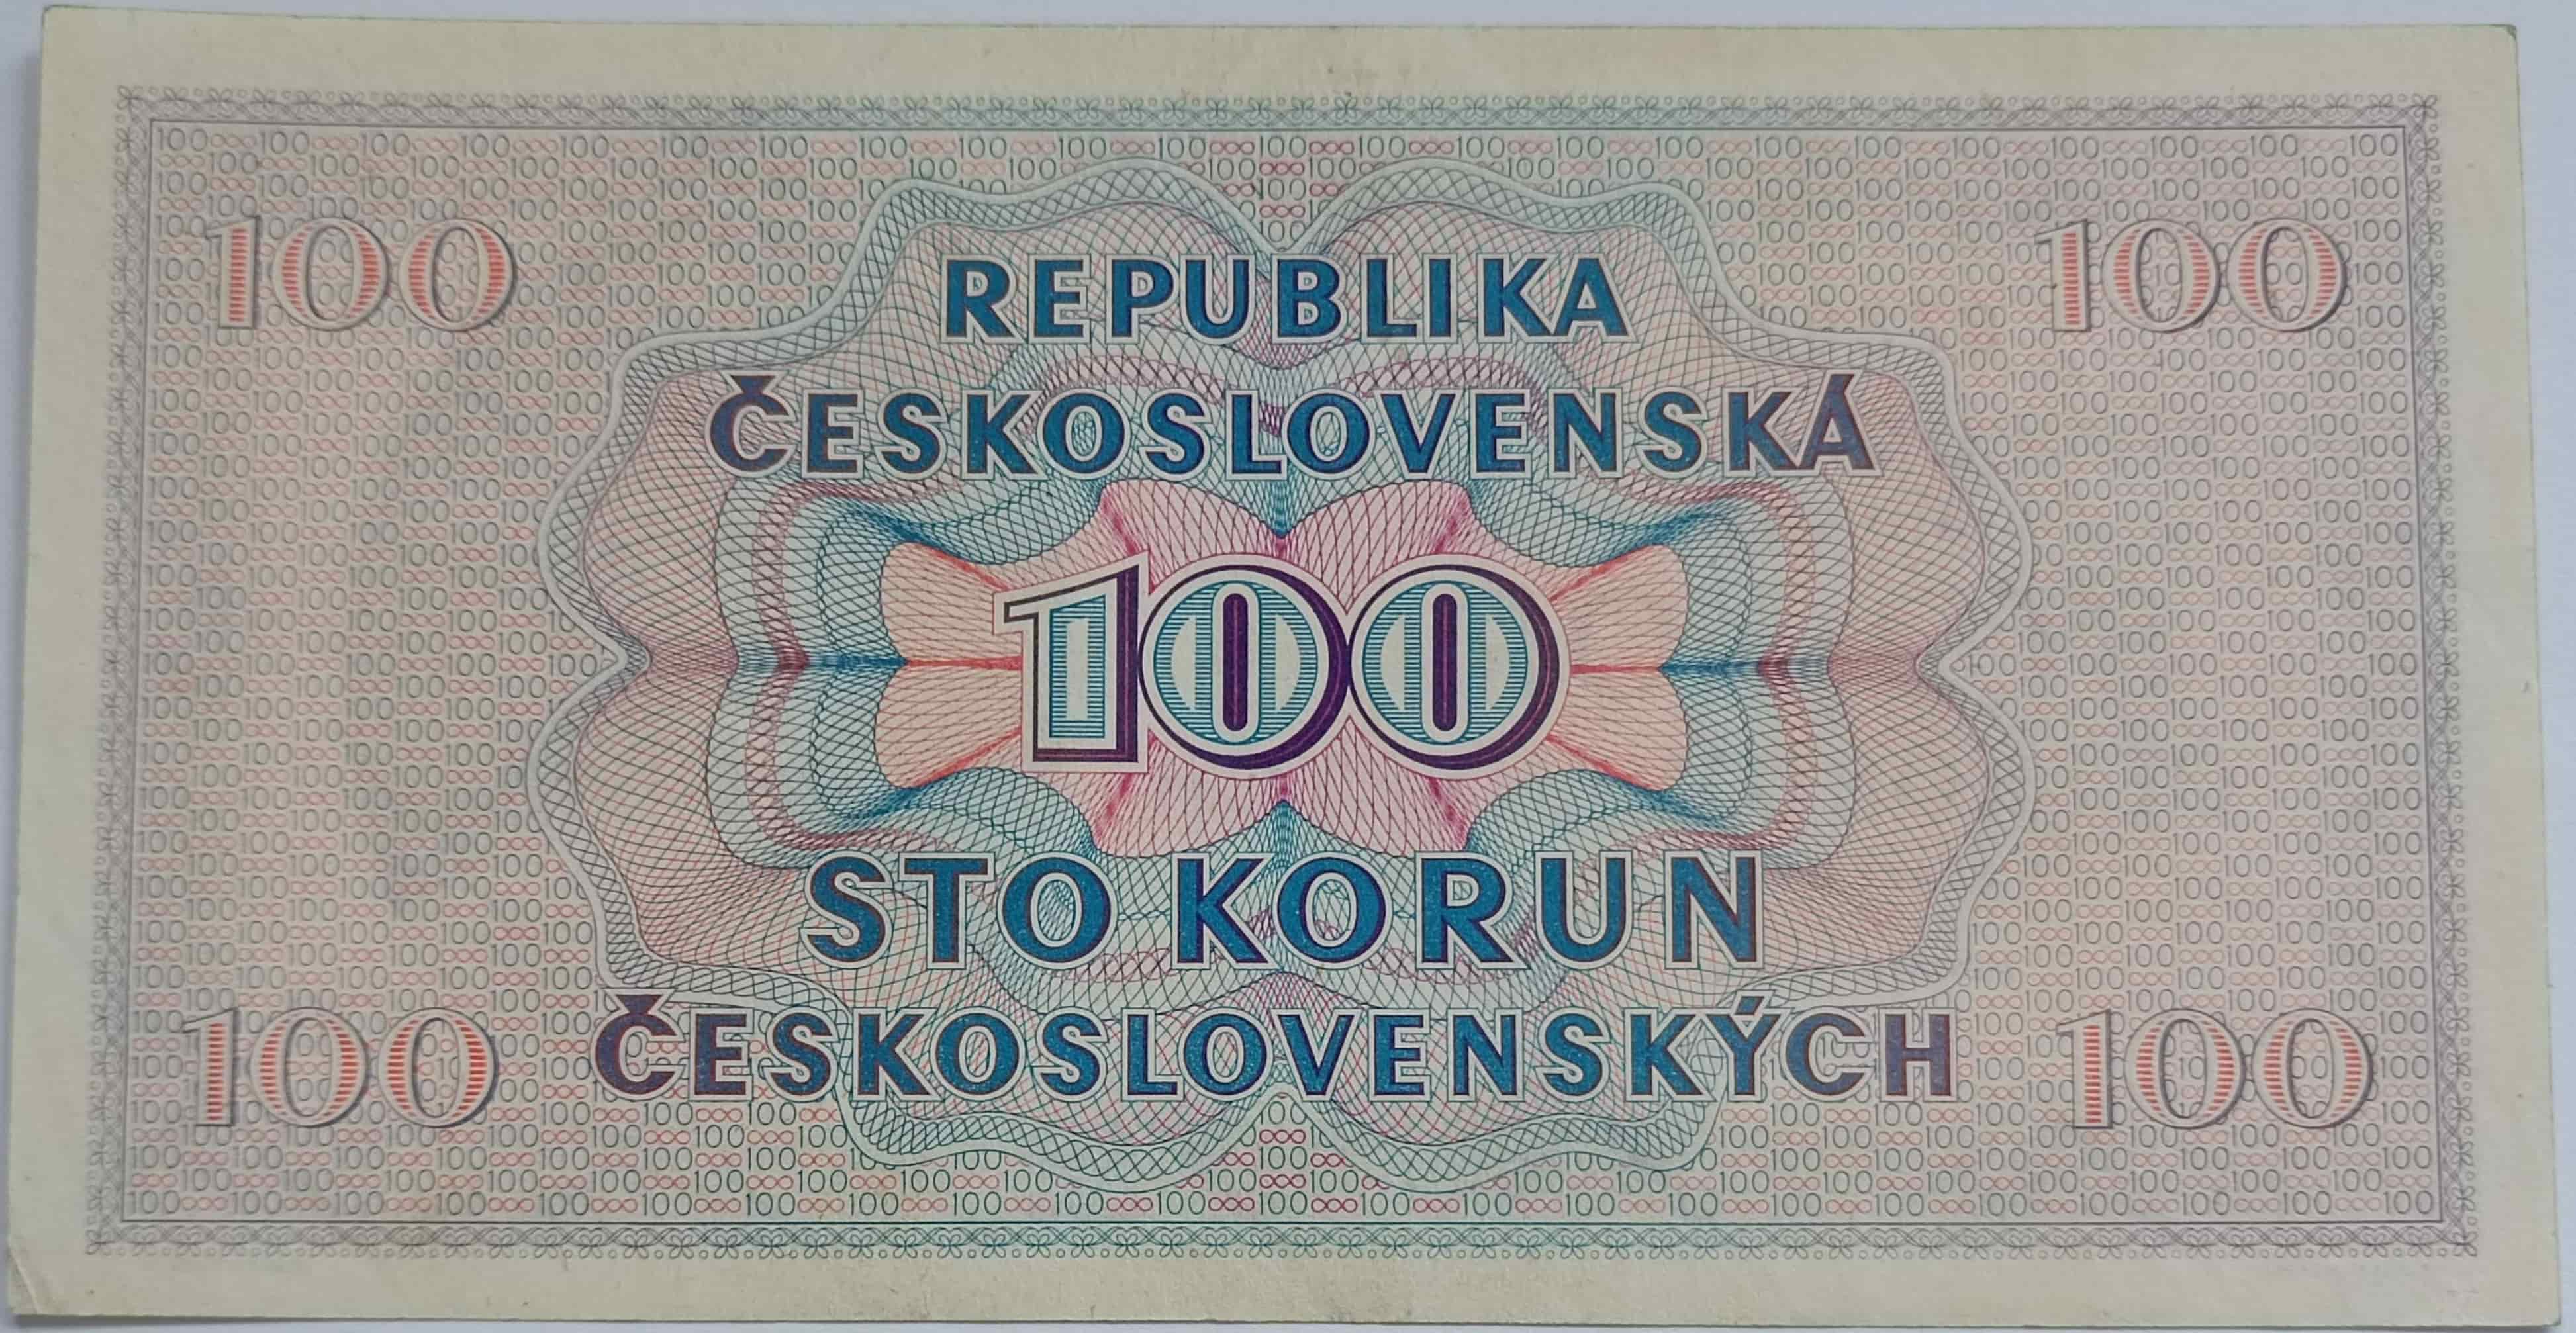 100 Kčs 1945 A57